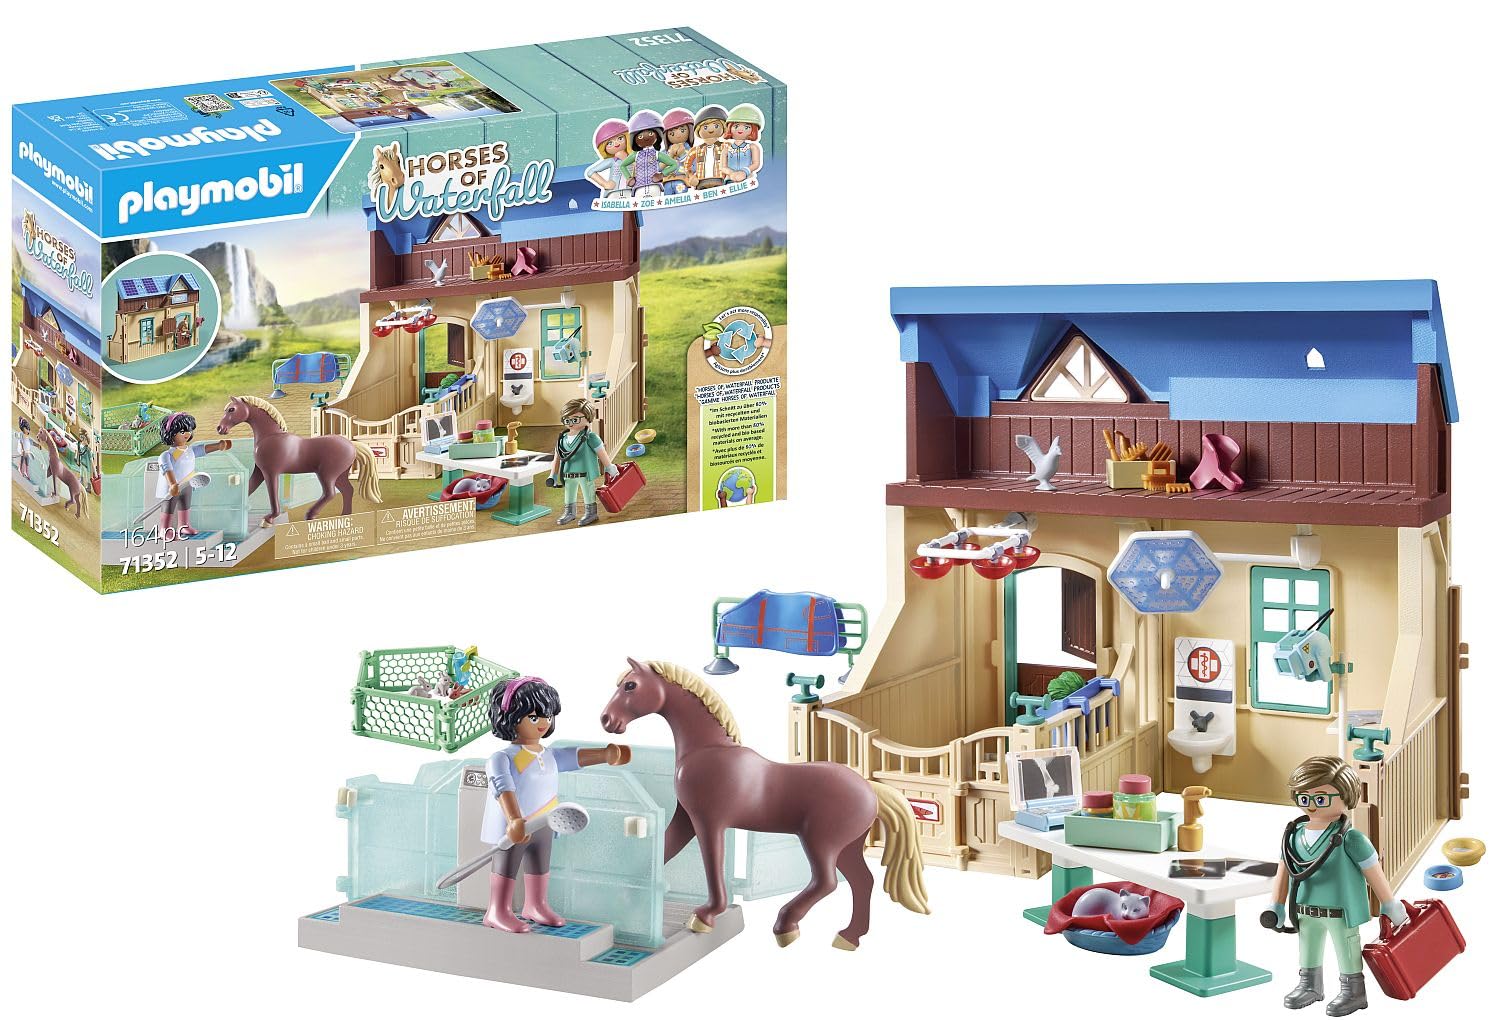 プレイモービル Playmobil 71352 Horses of Waterfall - Riding Therapy and Veterinary Practice 送料無料